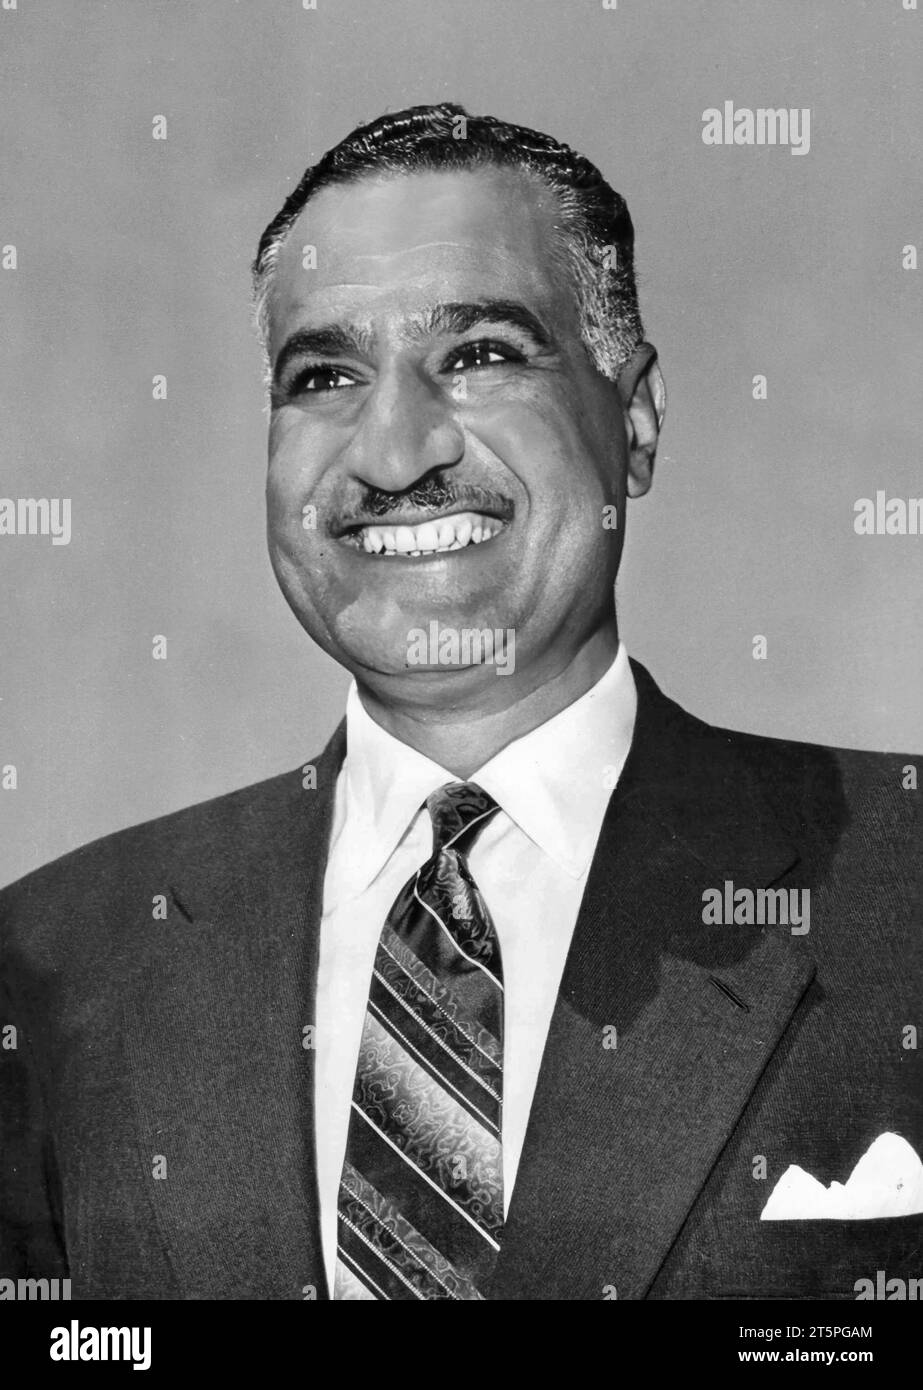 Gamel Abdel Nasser. Portrait of the former President of Egypt, Gamal Abdel Nasser Hussein (1918-1970), 1962 Stock Photo